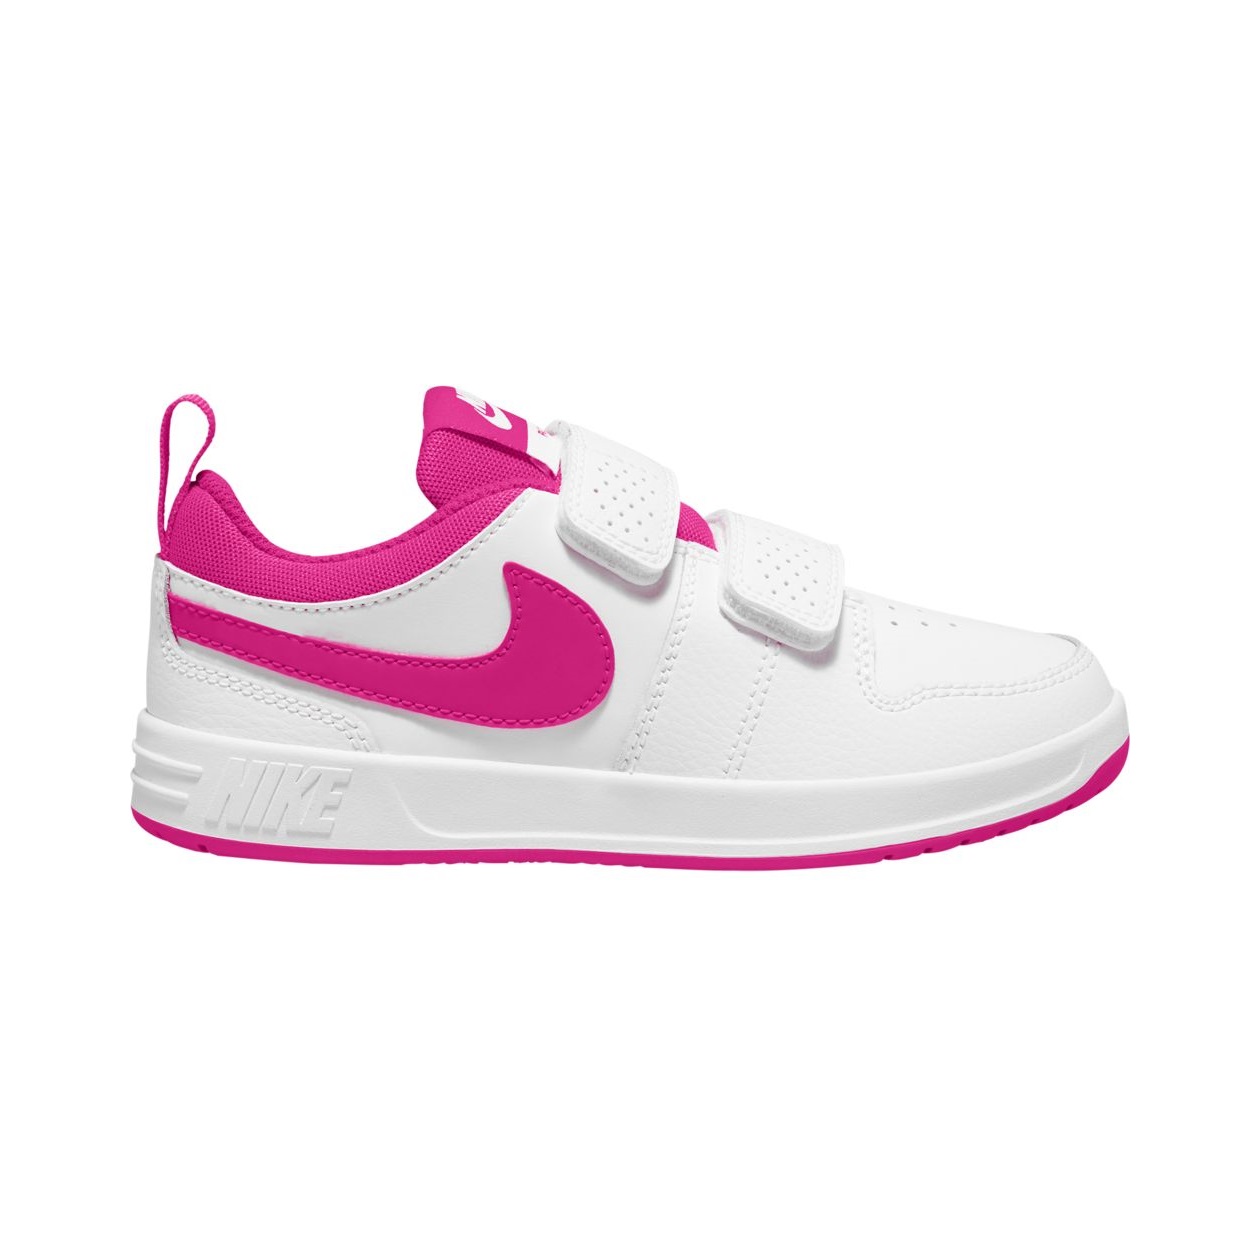 Zapatillas para niño/a - Nike 5 - AR4161-101 - Nike Pico 5 - AR4161-102 | ferrersport.com | Tienda de deportes